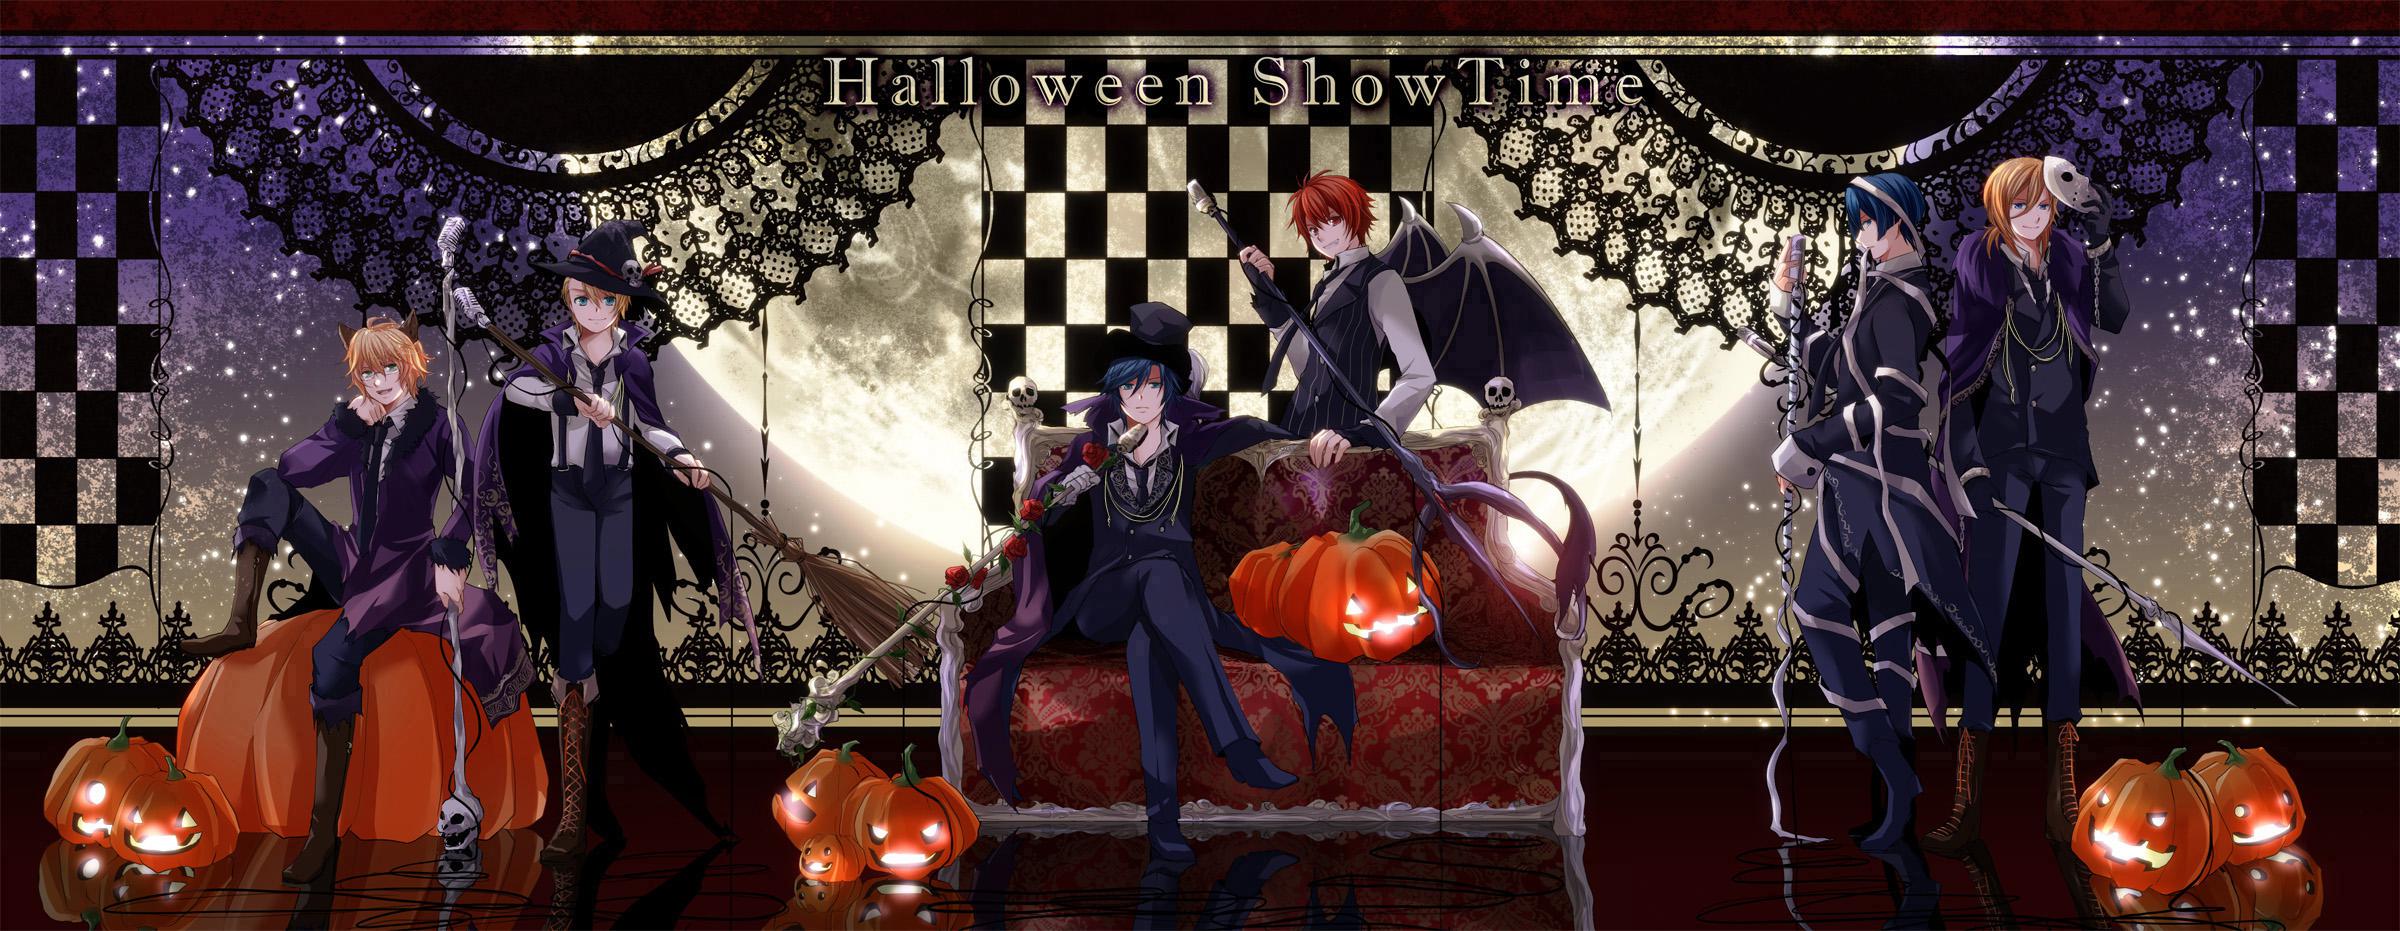 【歌里】Halloween ShowTime插画图片壁纸